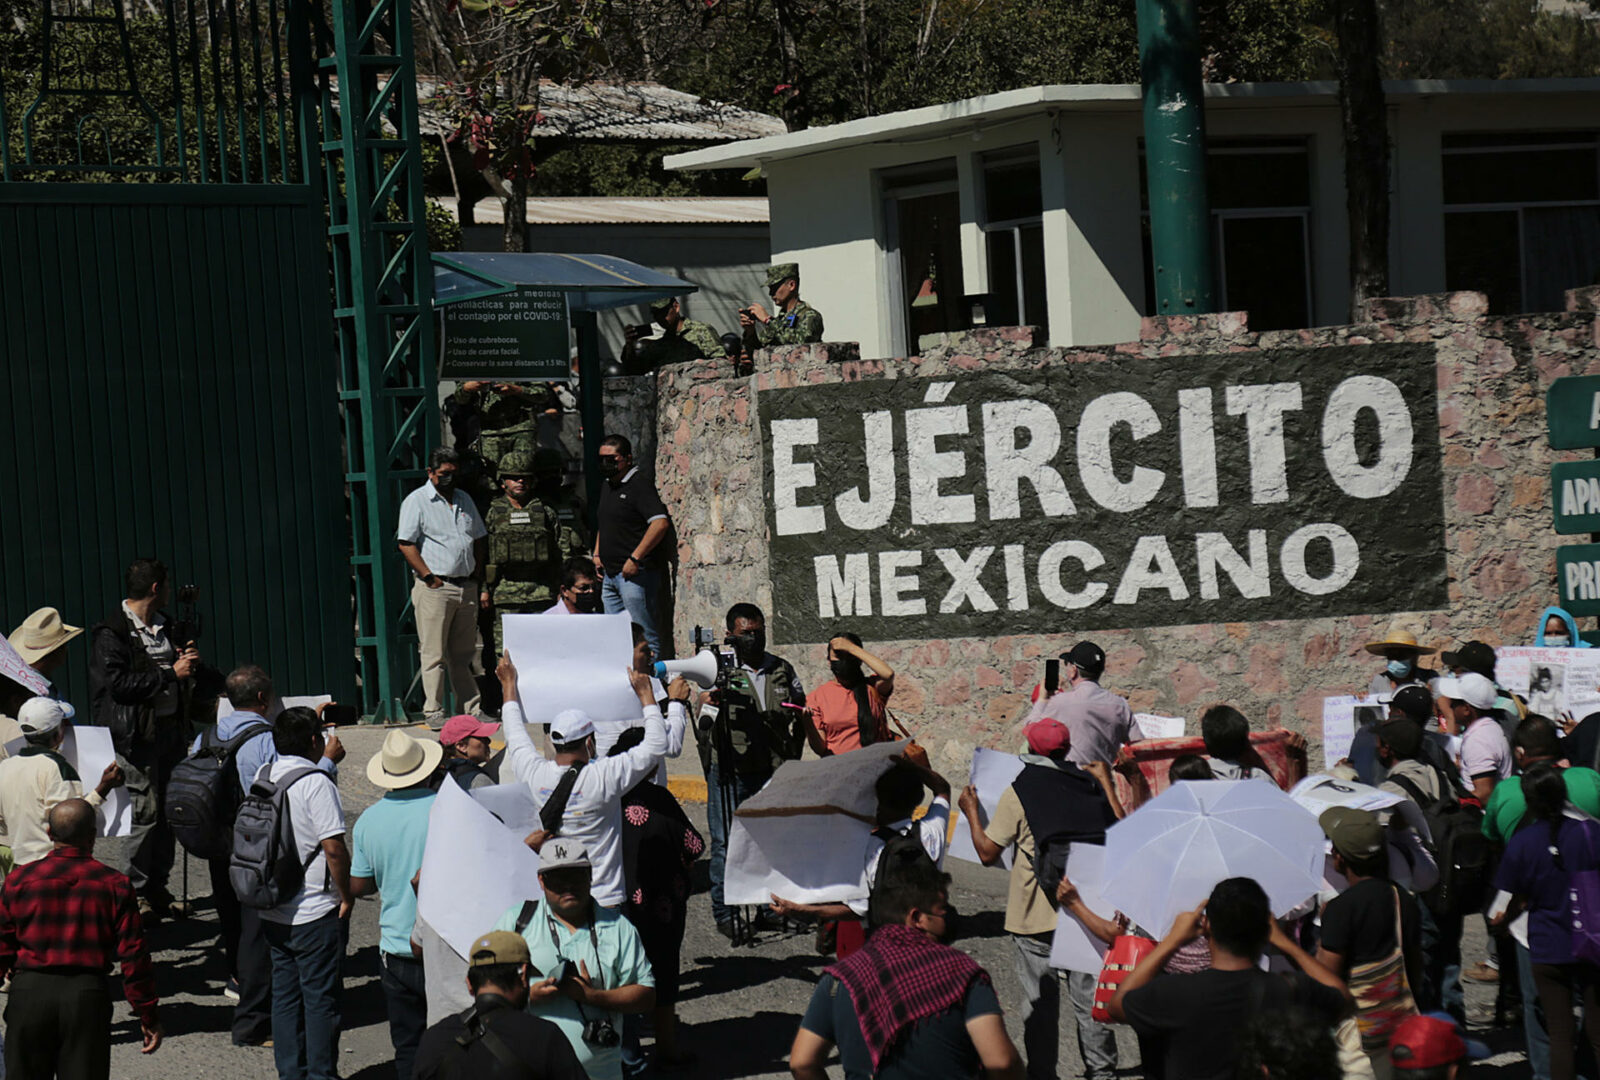 Familiares piden justicia para desaparecidos de Guerra Sucia en sur de México